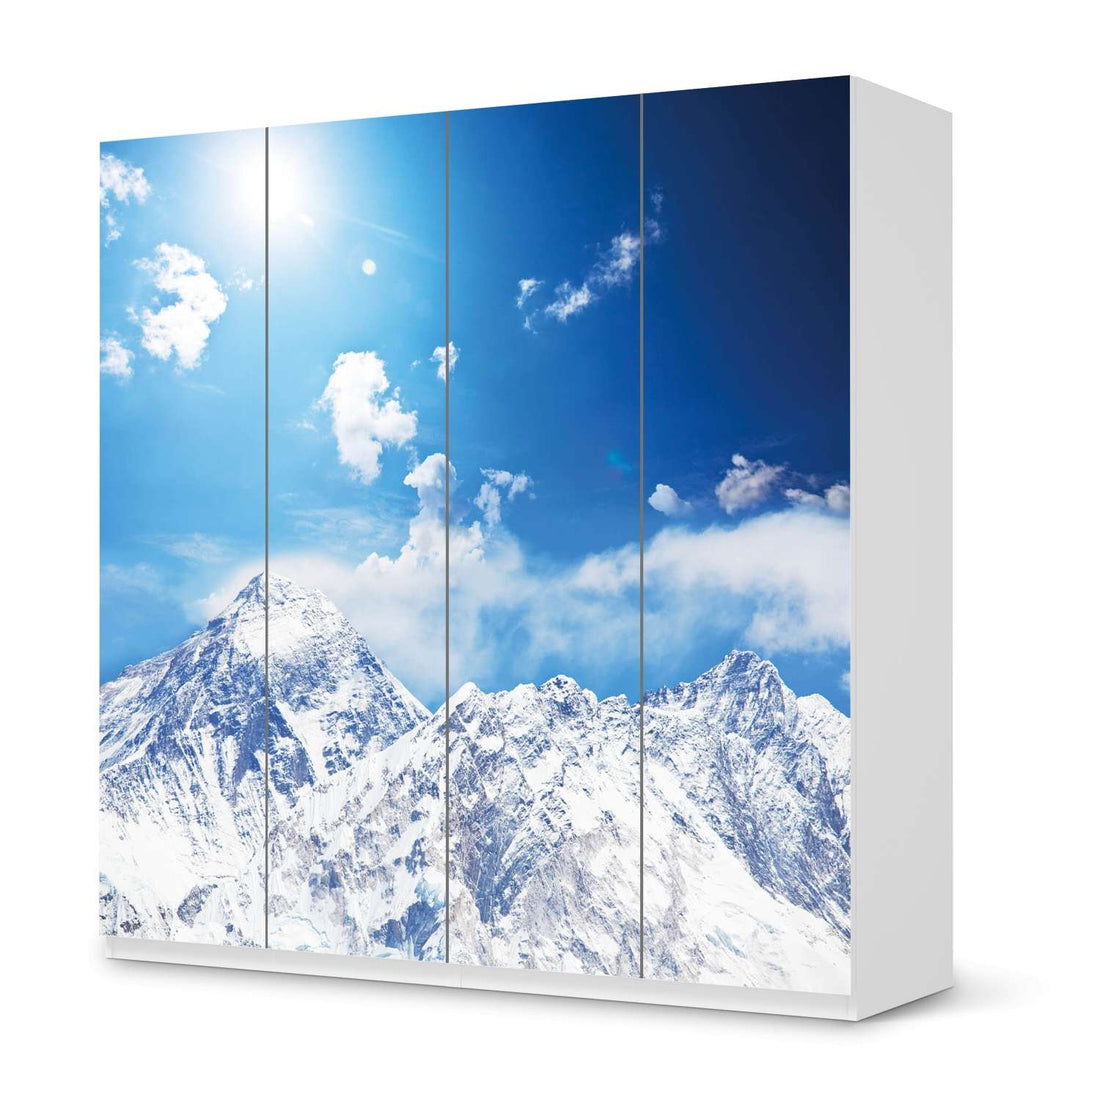 Klebefolie für Schränke Everest - IKEA Pax Schrank 201 cm Höhe - 4 Türen - weiss